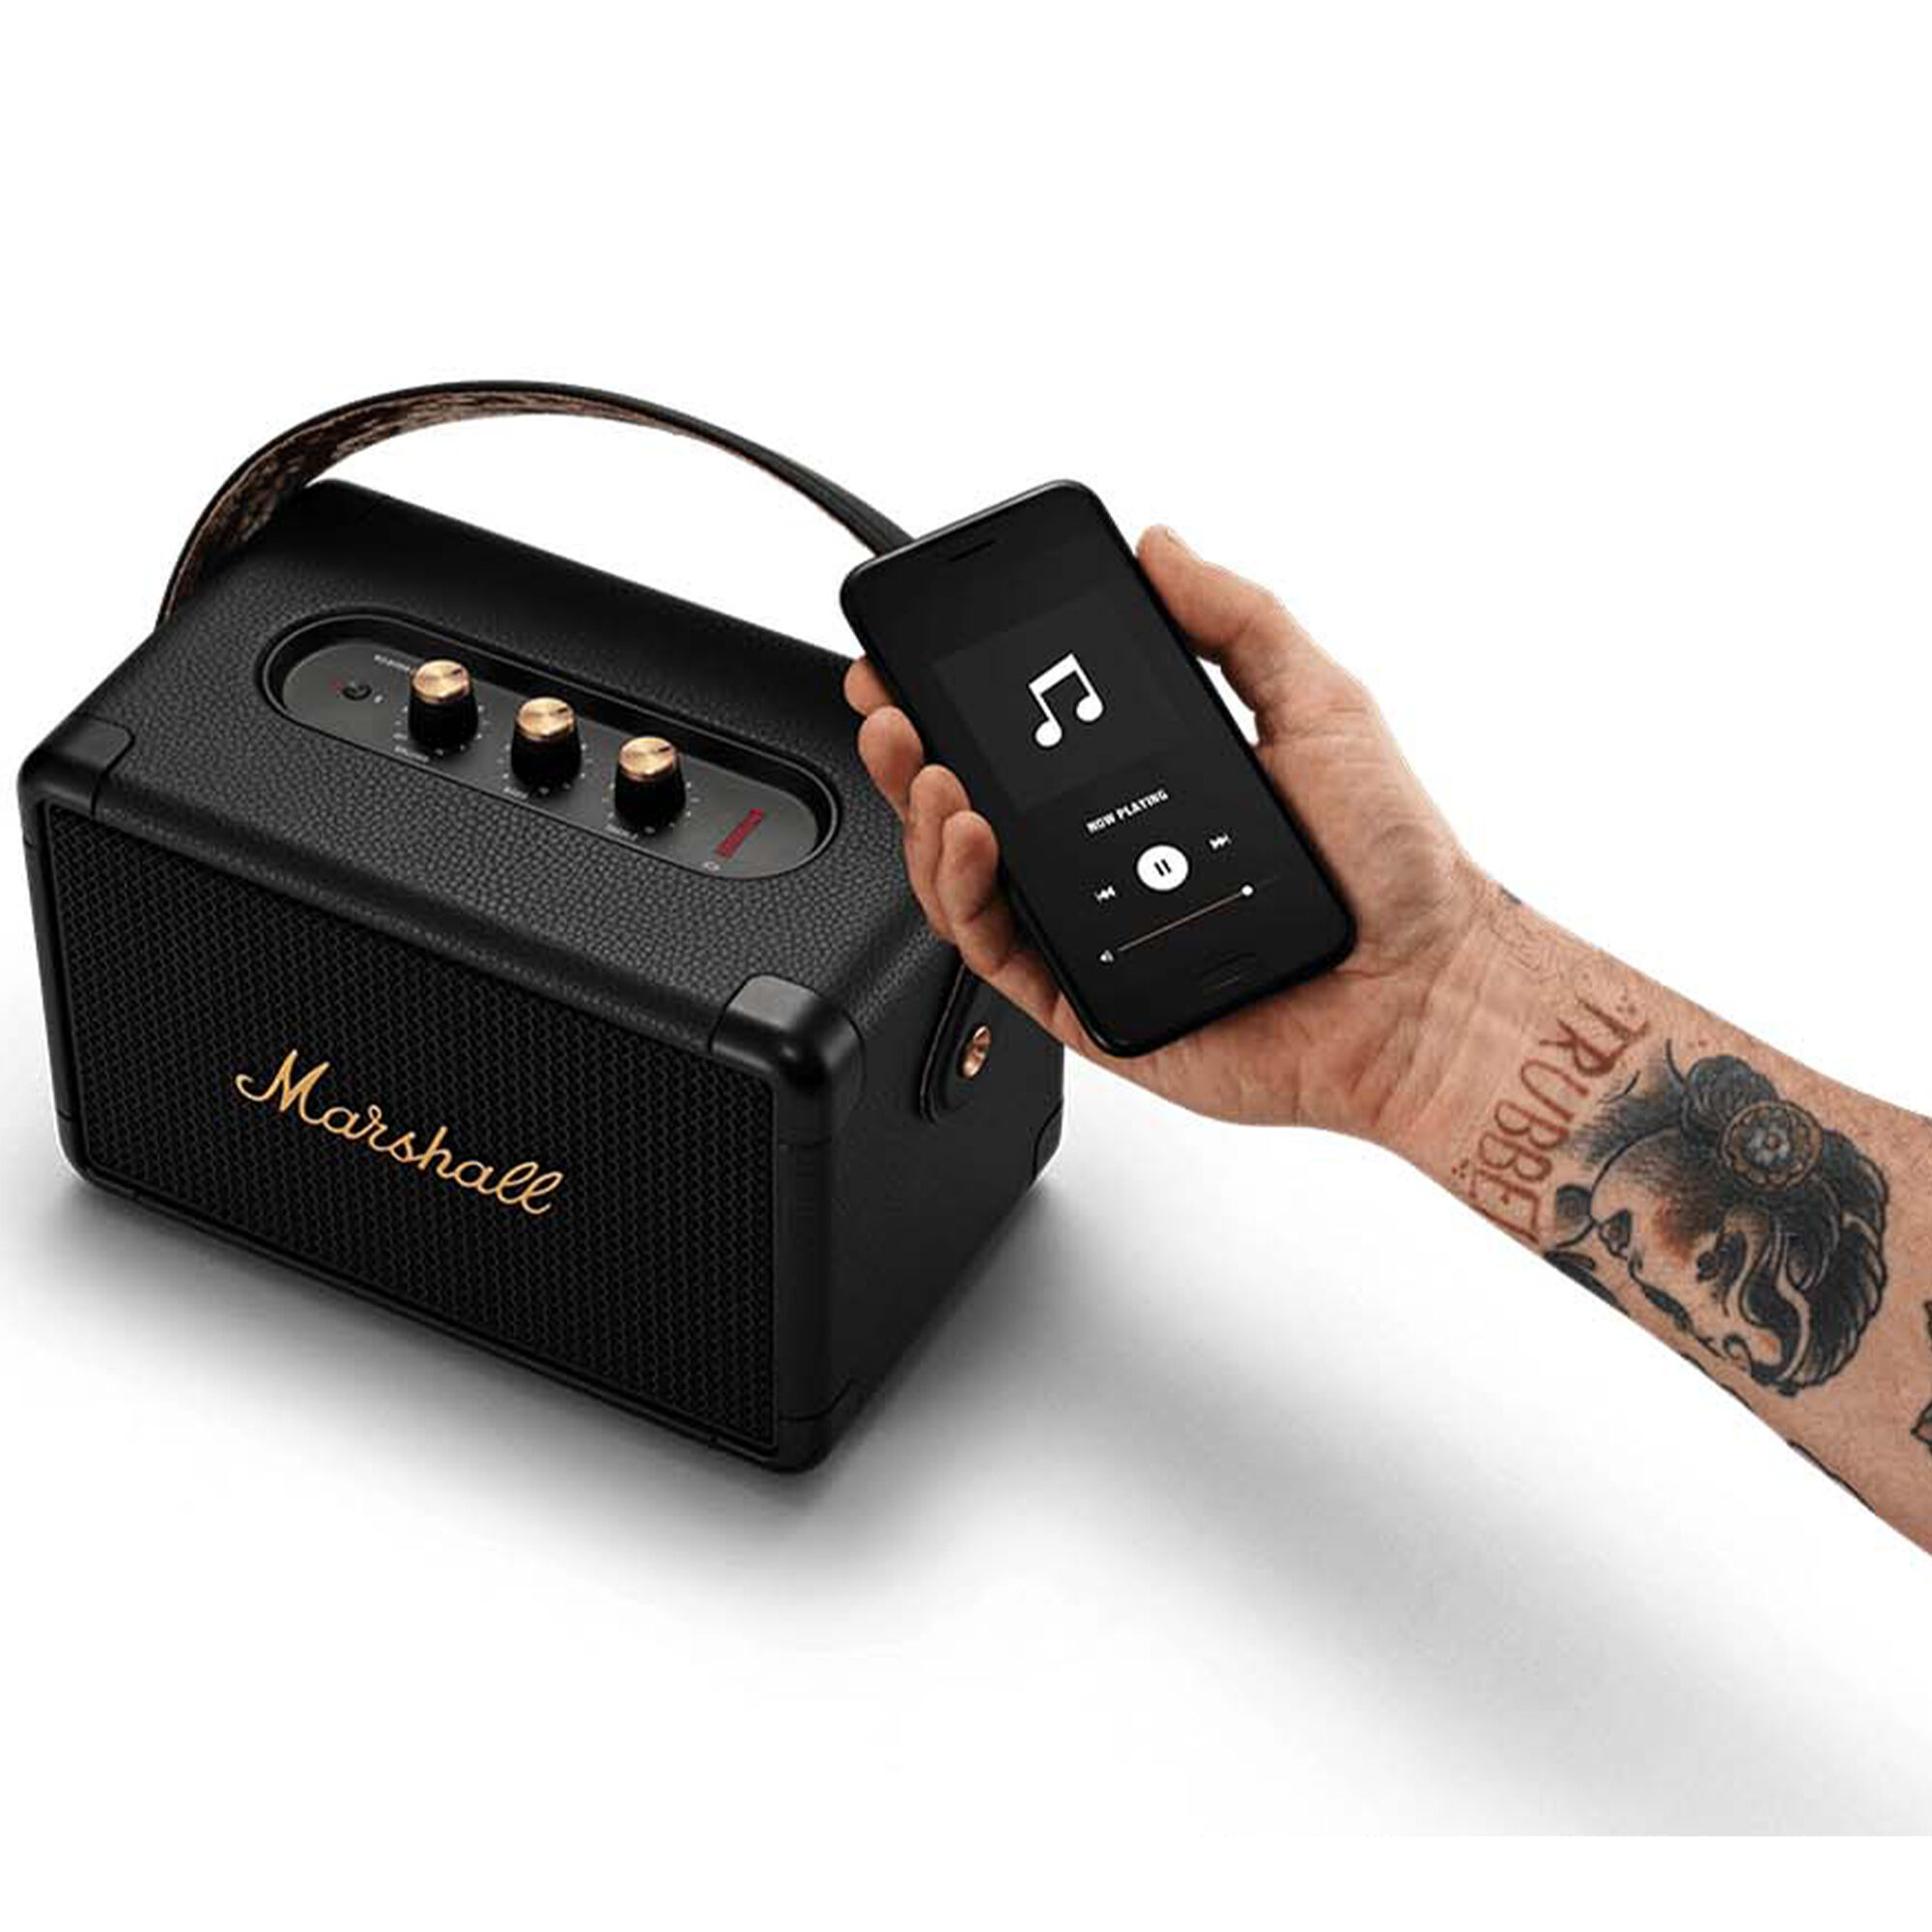 Marshall Kilburn II Bluetooth Speaker - Black